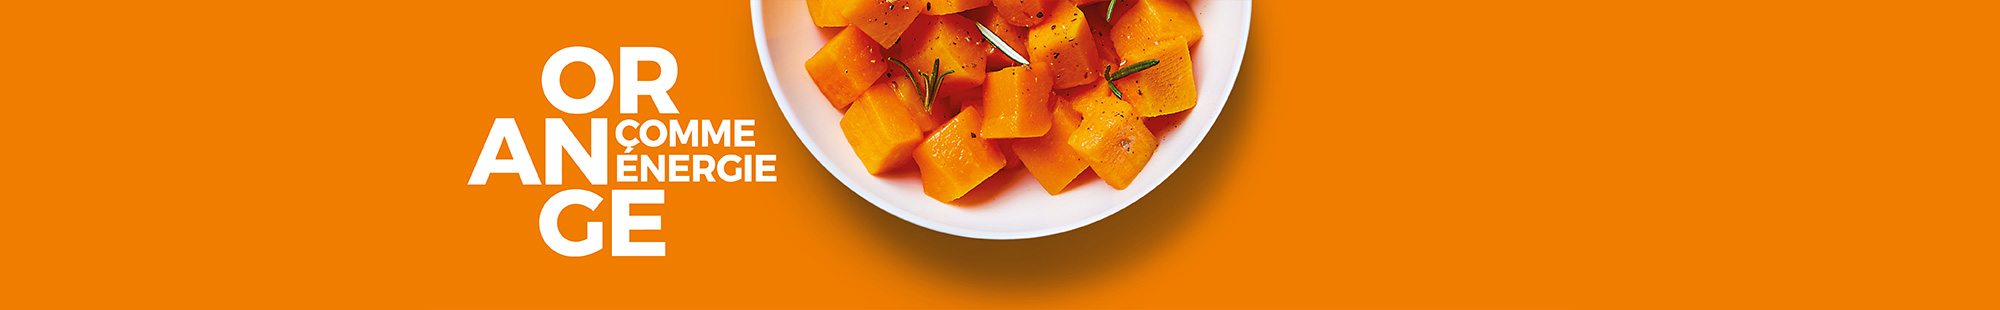 Mettez de la couleur dans votre assiette avec la Maison Thiriet : orange comme énergie